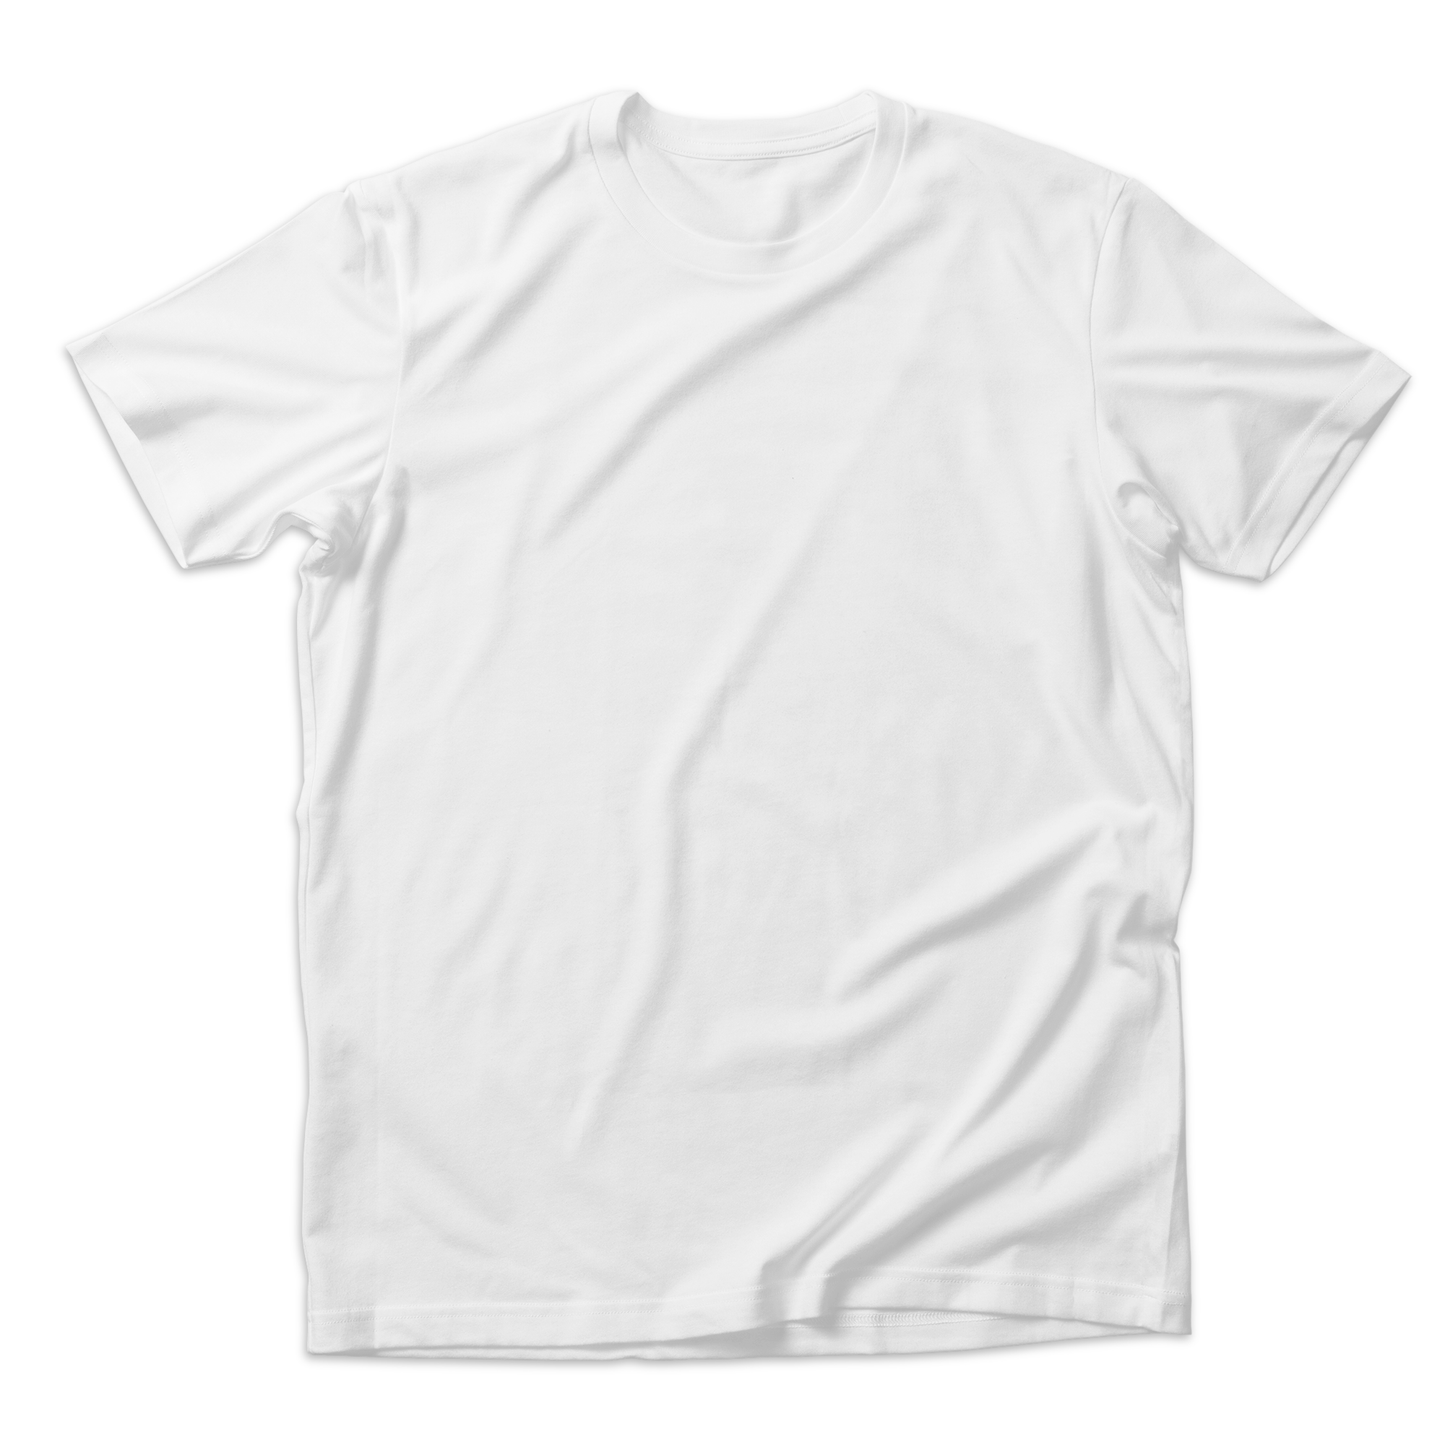 [Custom Image] Organic Kids Tee Shirt